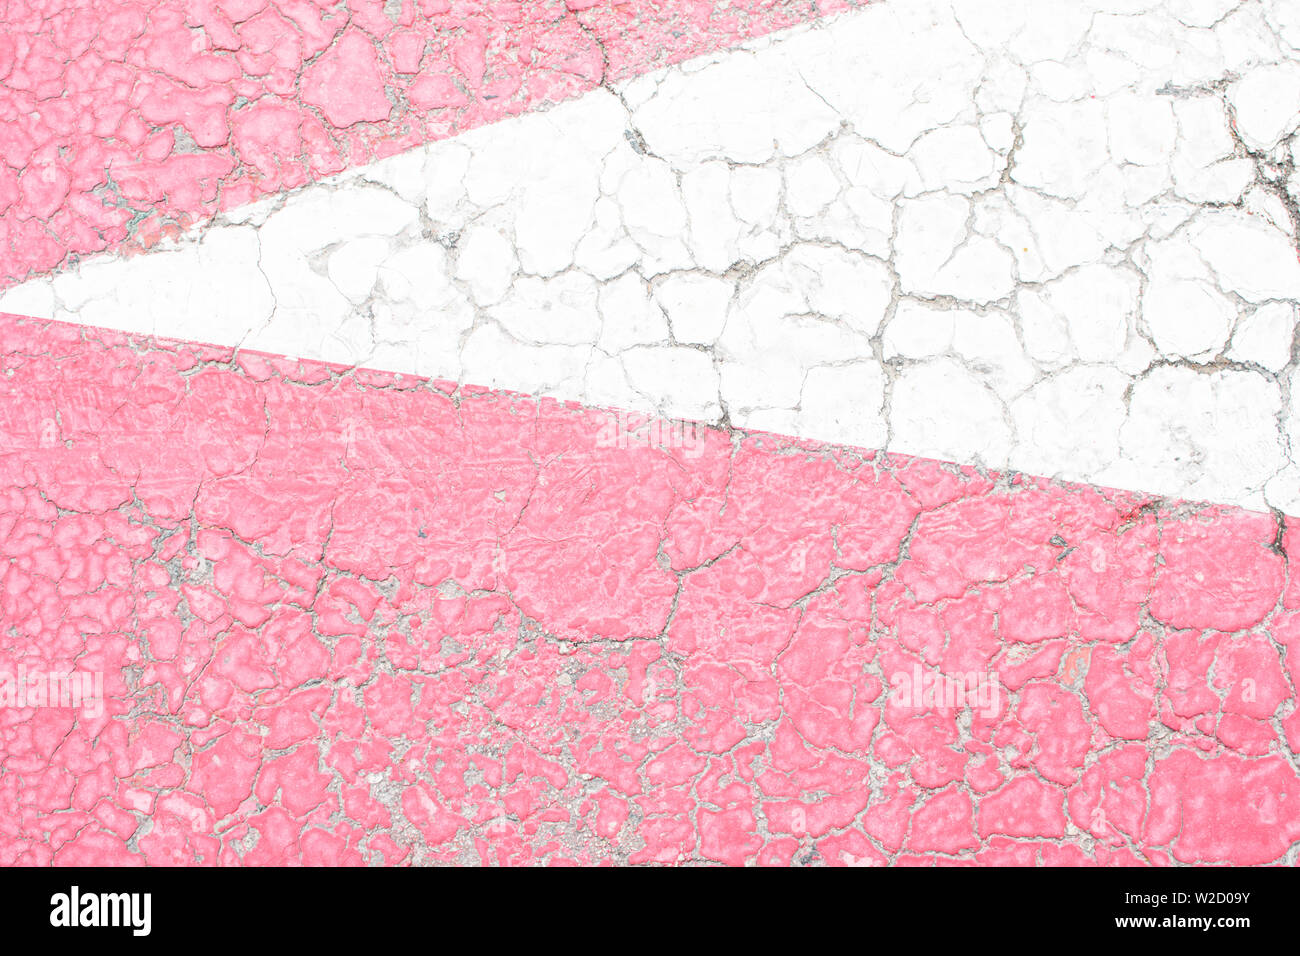 Rosa e Bianco vecchia vernice incrinata, incrinato dal calore del sole sulla superficie di calcestruzzo. Ottimo per la progettazione e la consistenza dello sfondo. Foto Stock